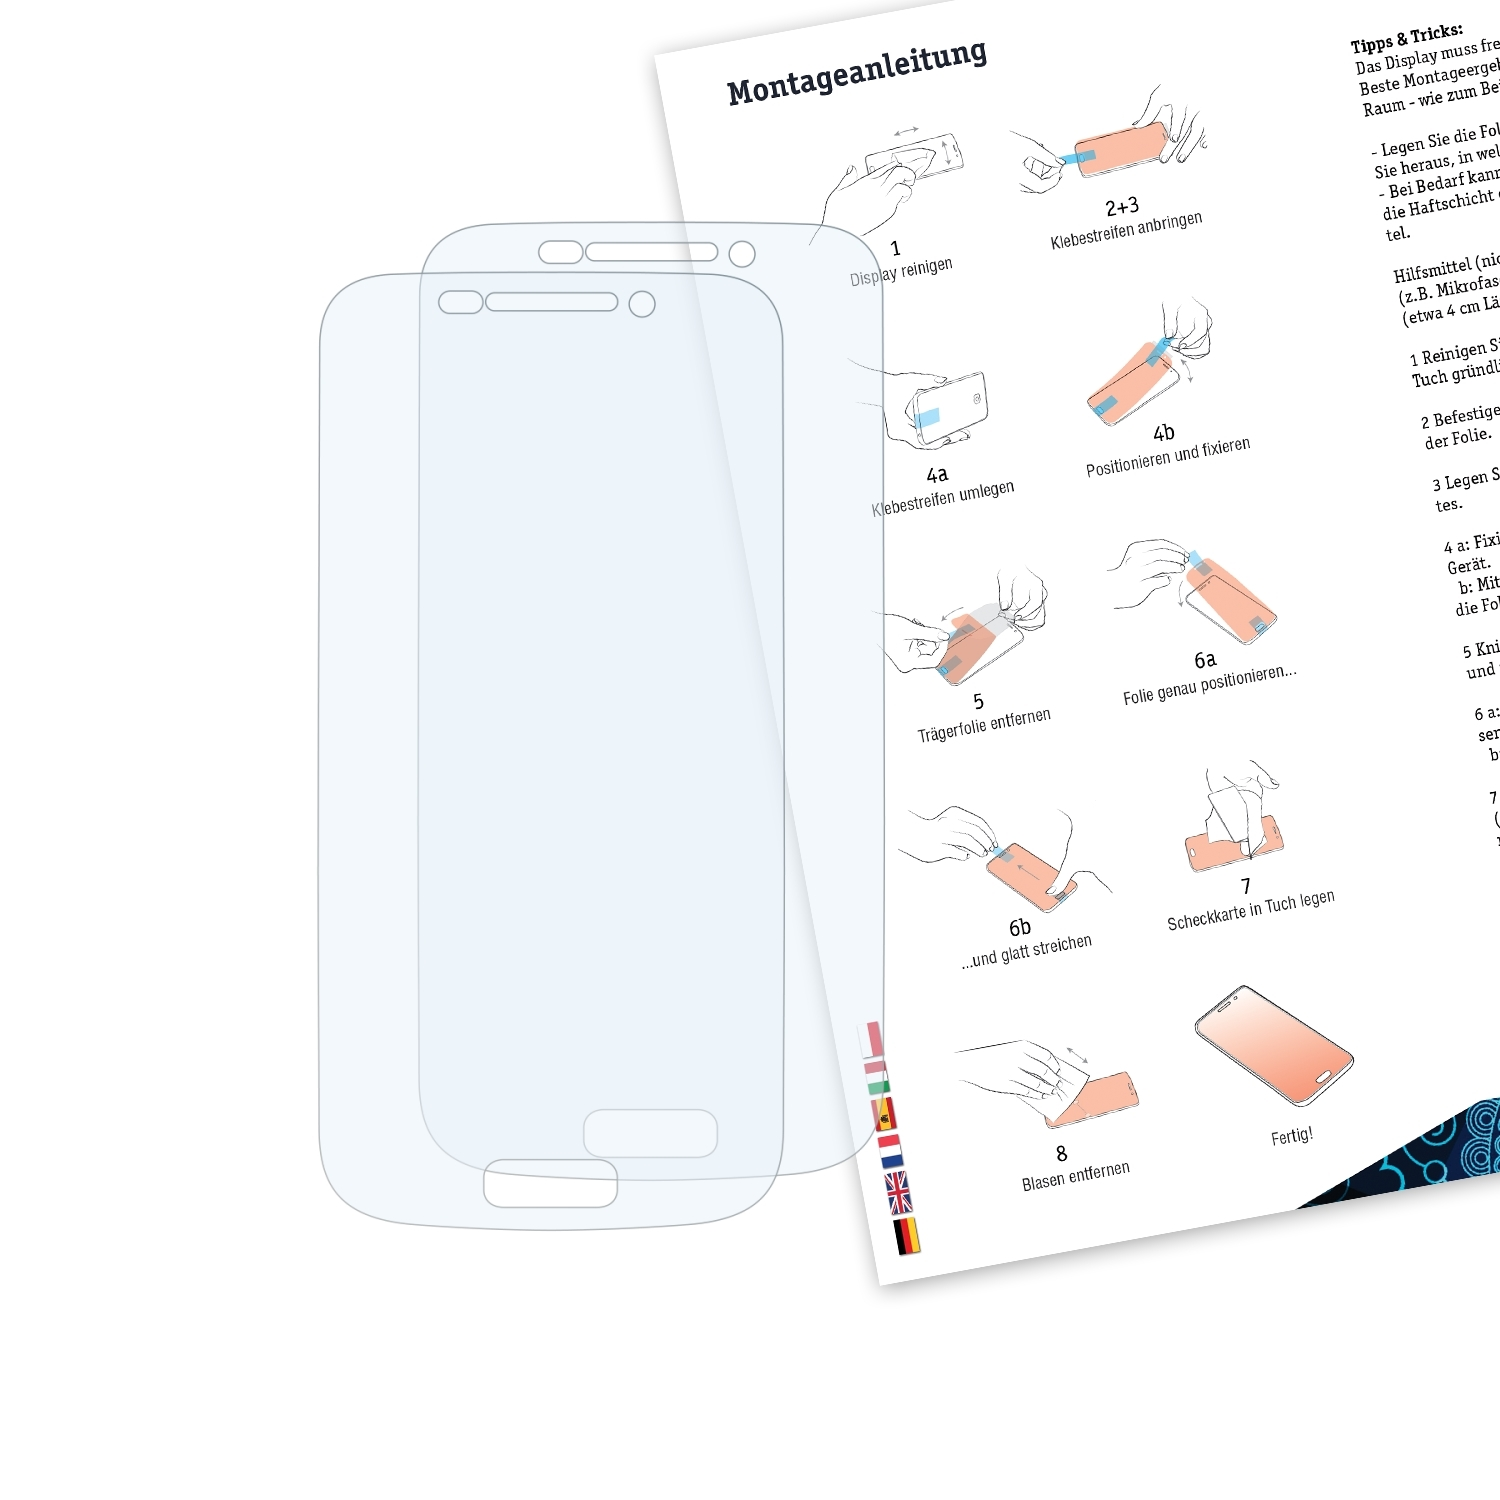 BRUNI 2x Basics-Clear Schutzfolie(für Zoom) Galaxy S4 Samsung